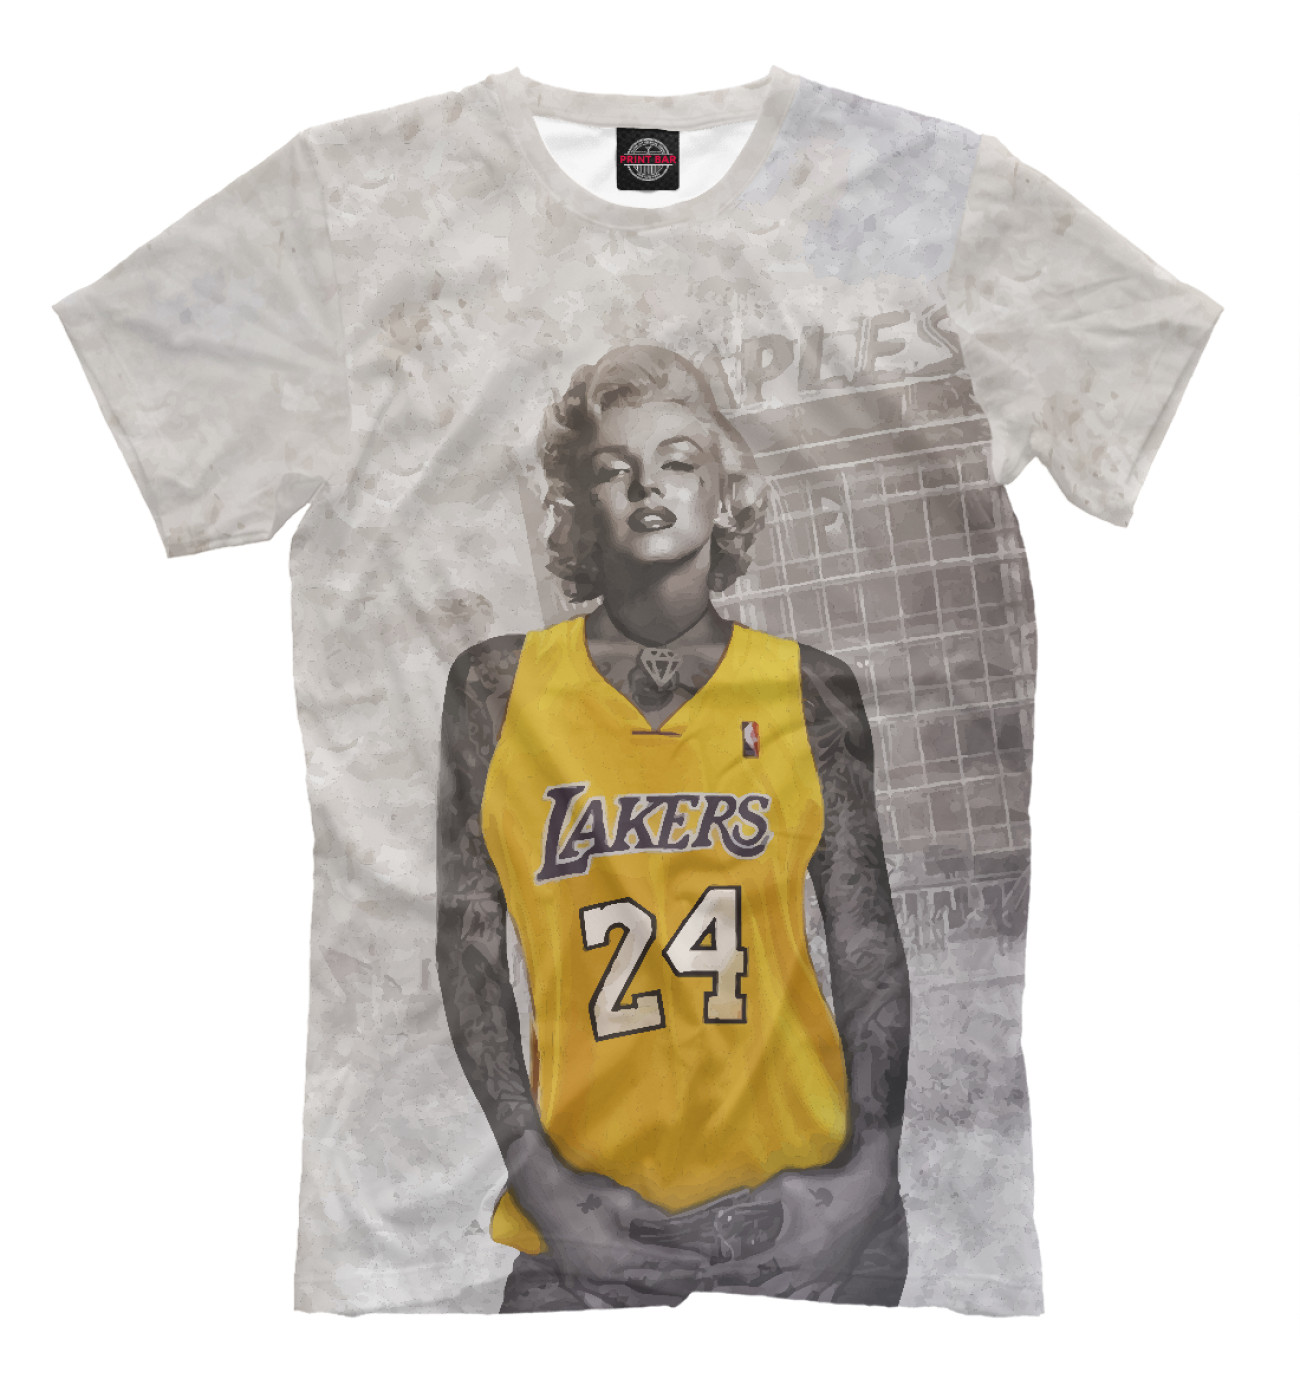 Мужская Футболка Lakers 24 Marilyn, артикул: NBA-257703-fut-2